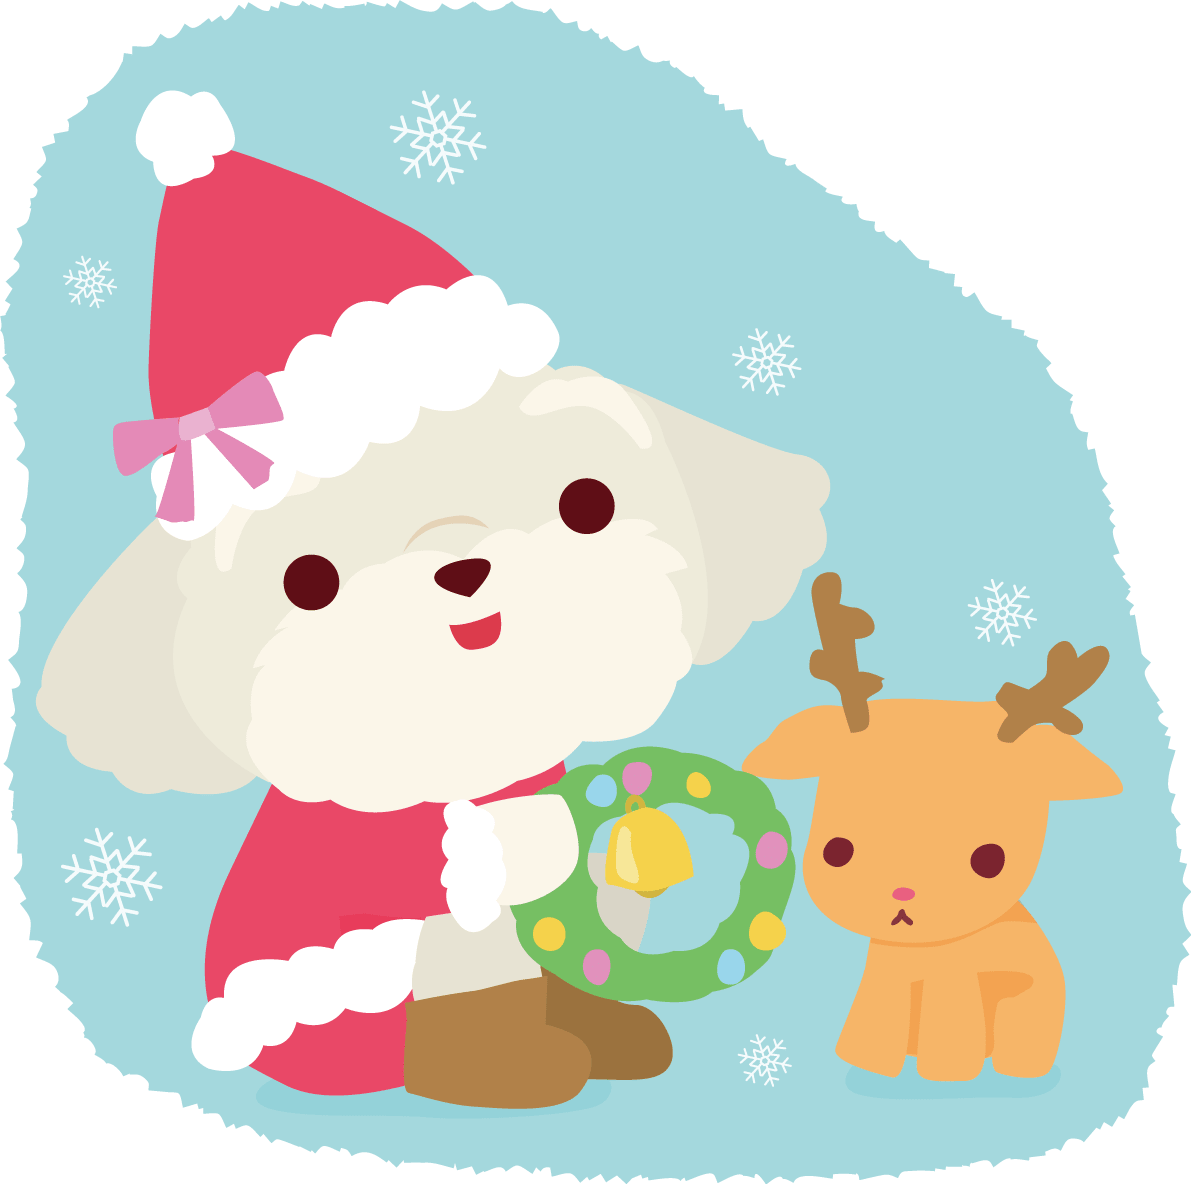 マルチーズ 犬 サンタクロースのクリスマスかわいい動物 イラスト素材 超多くの無料かわいいイラスト素材